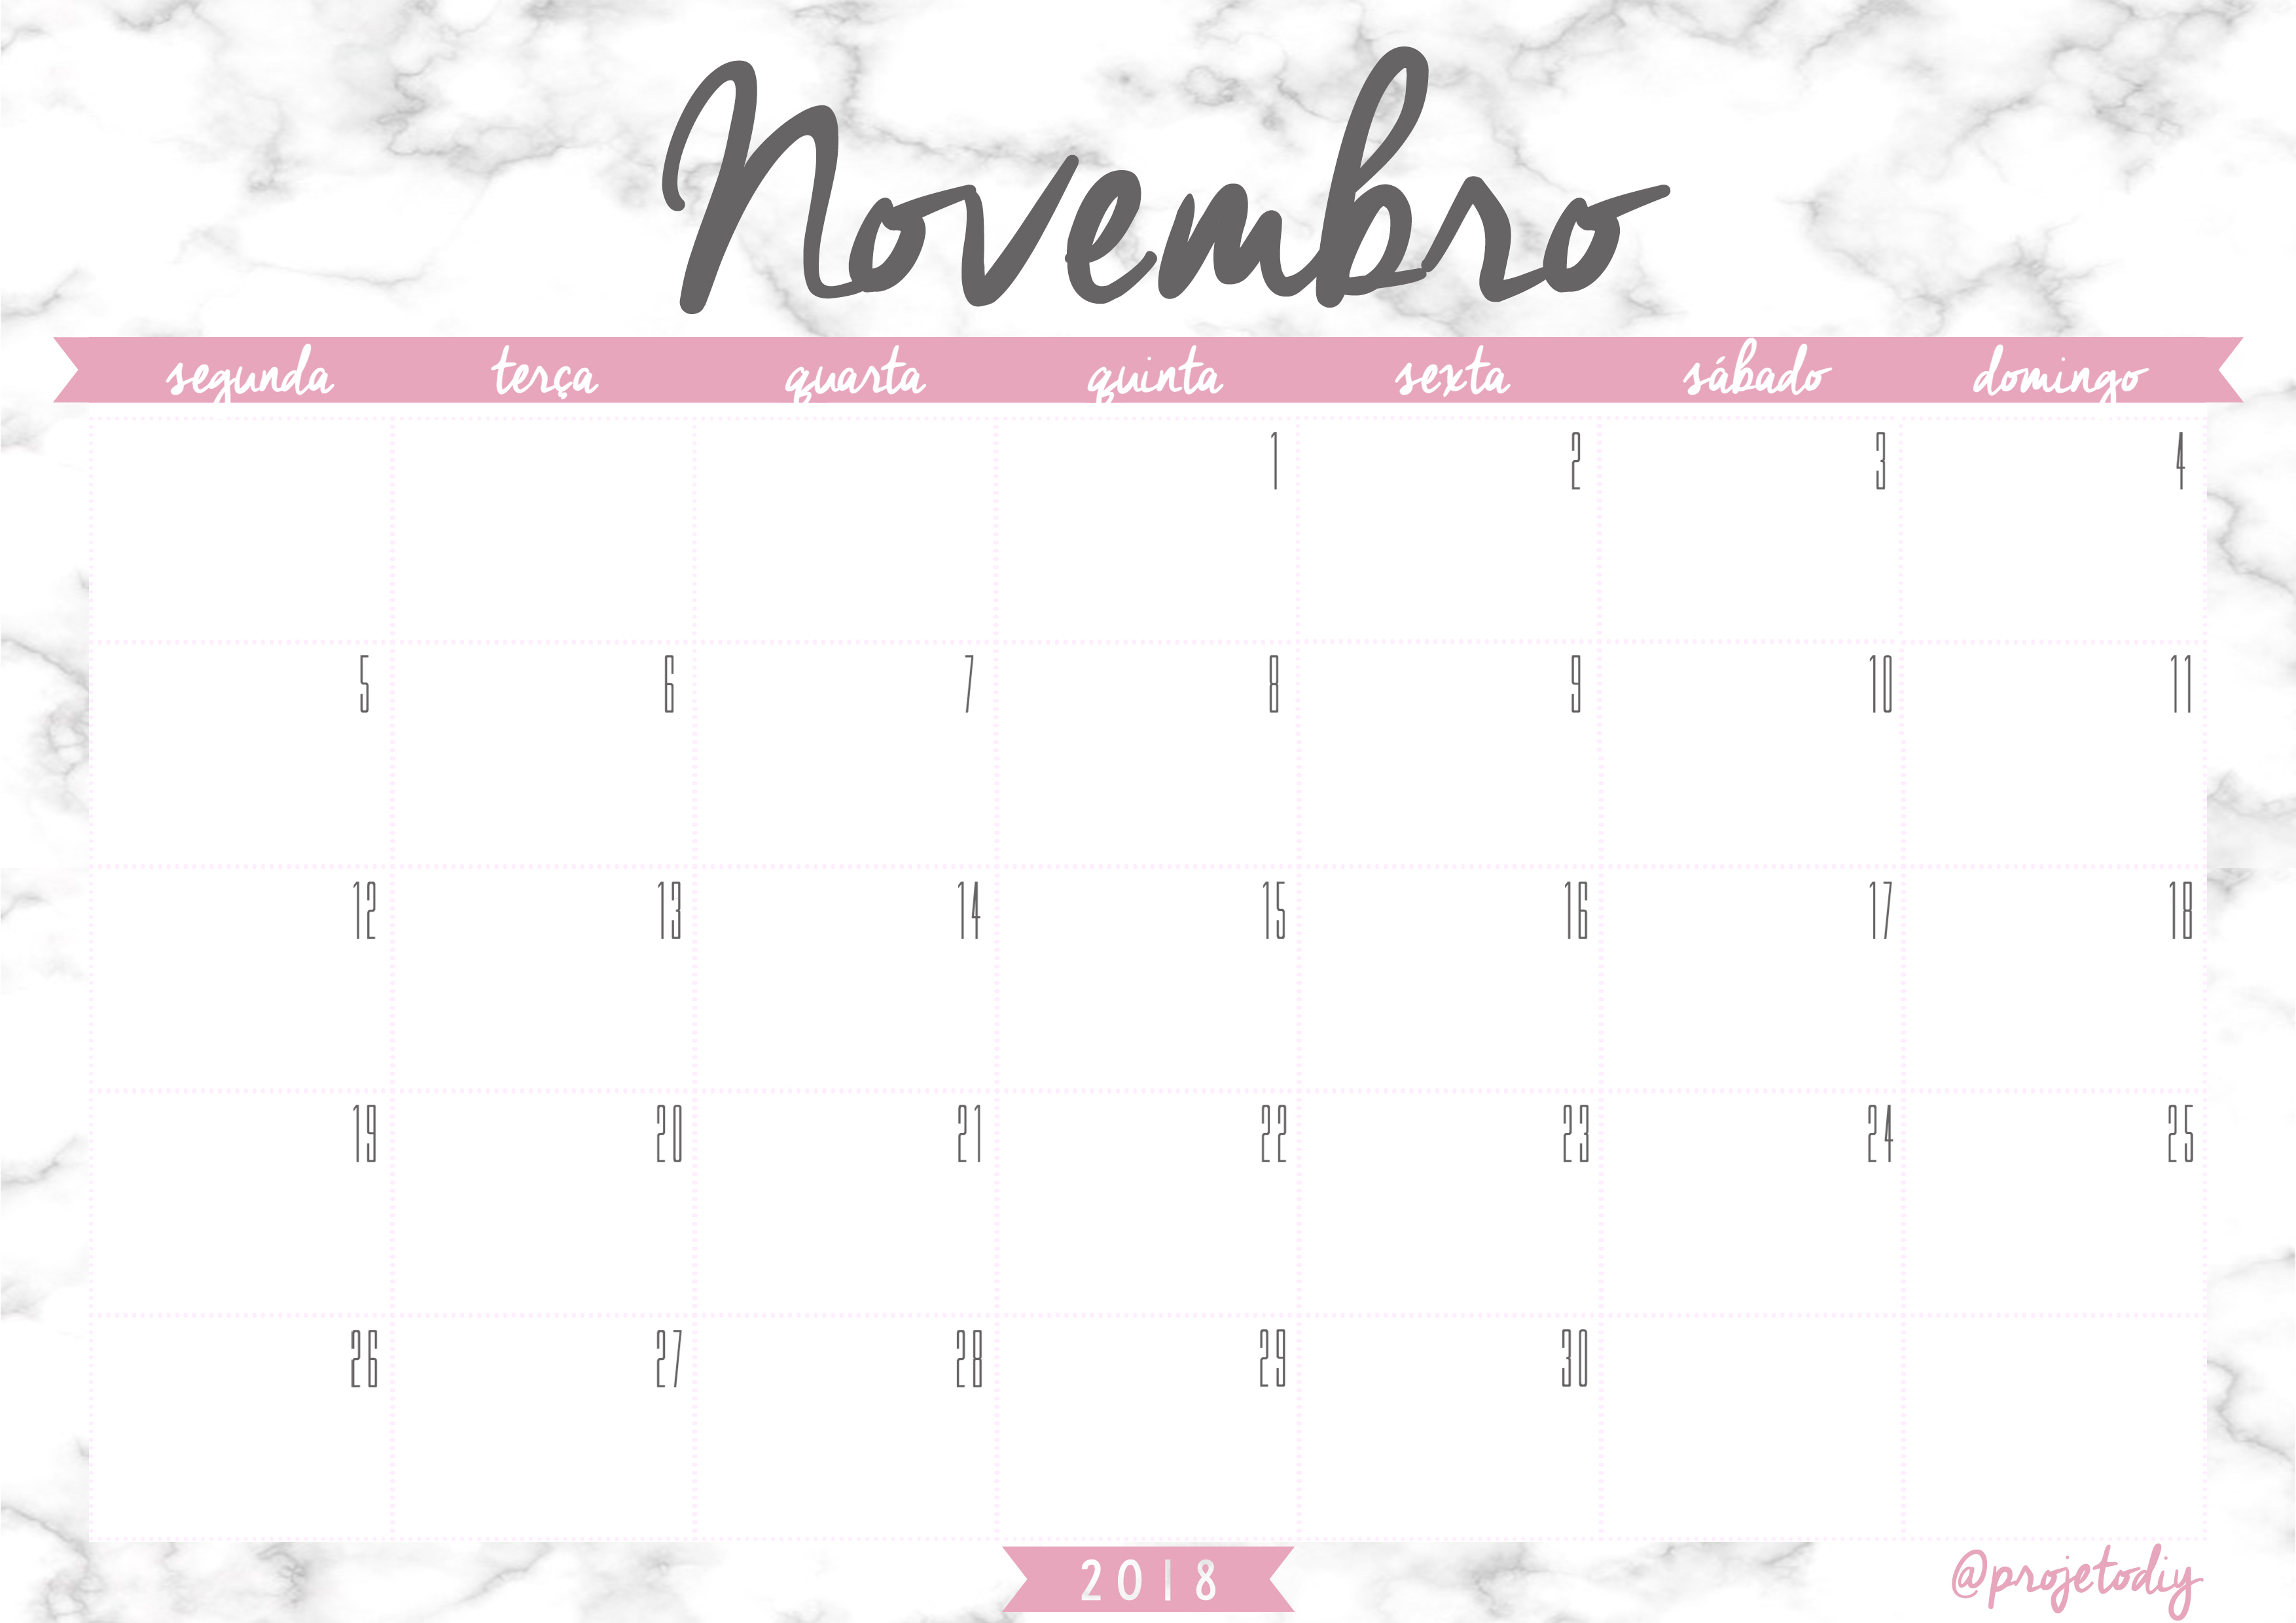 calendario 2018 - novembro